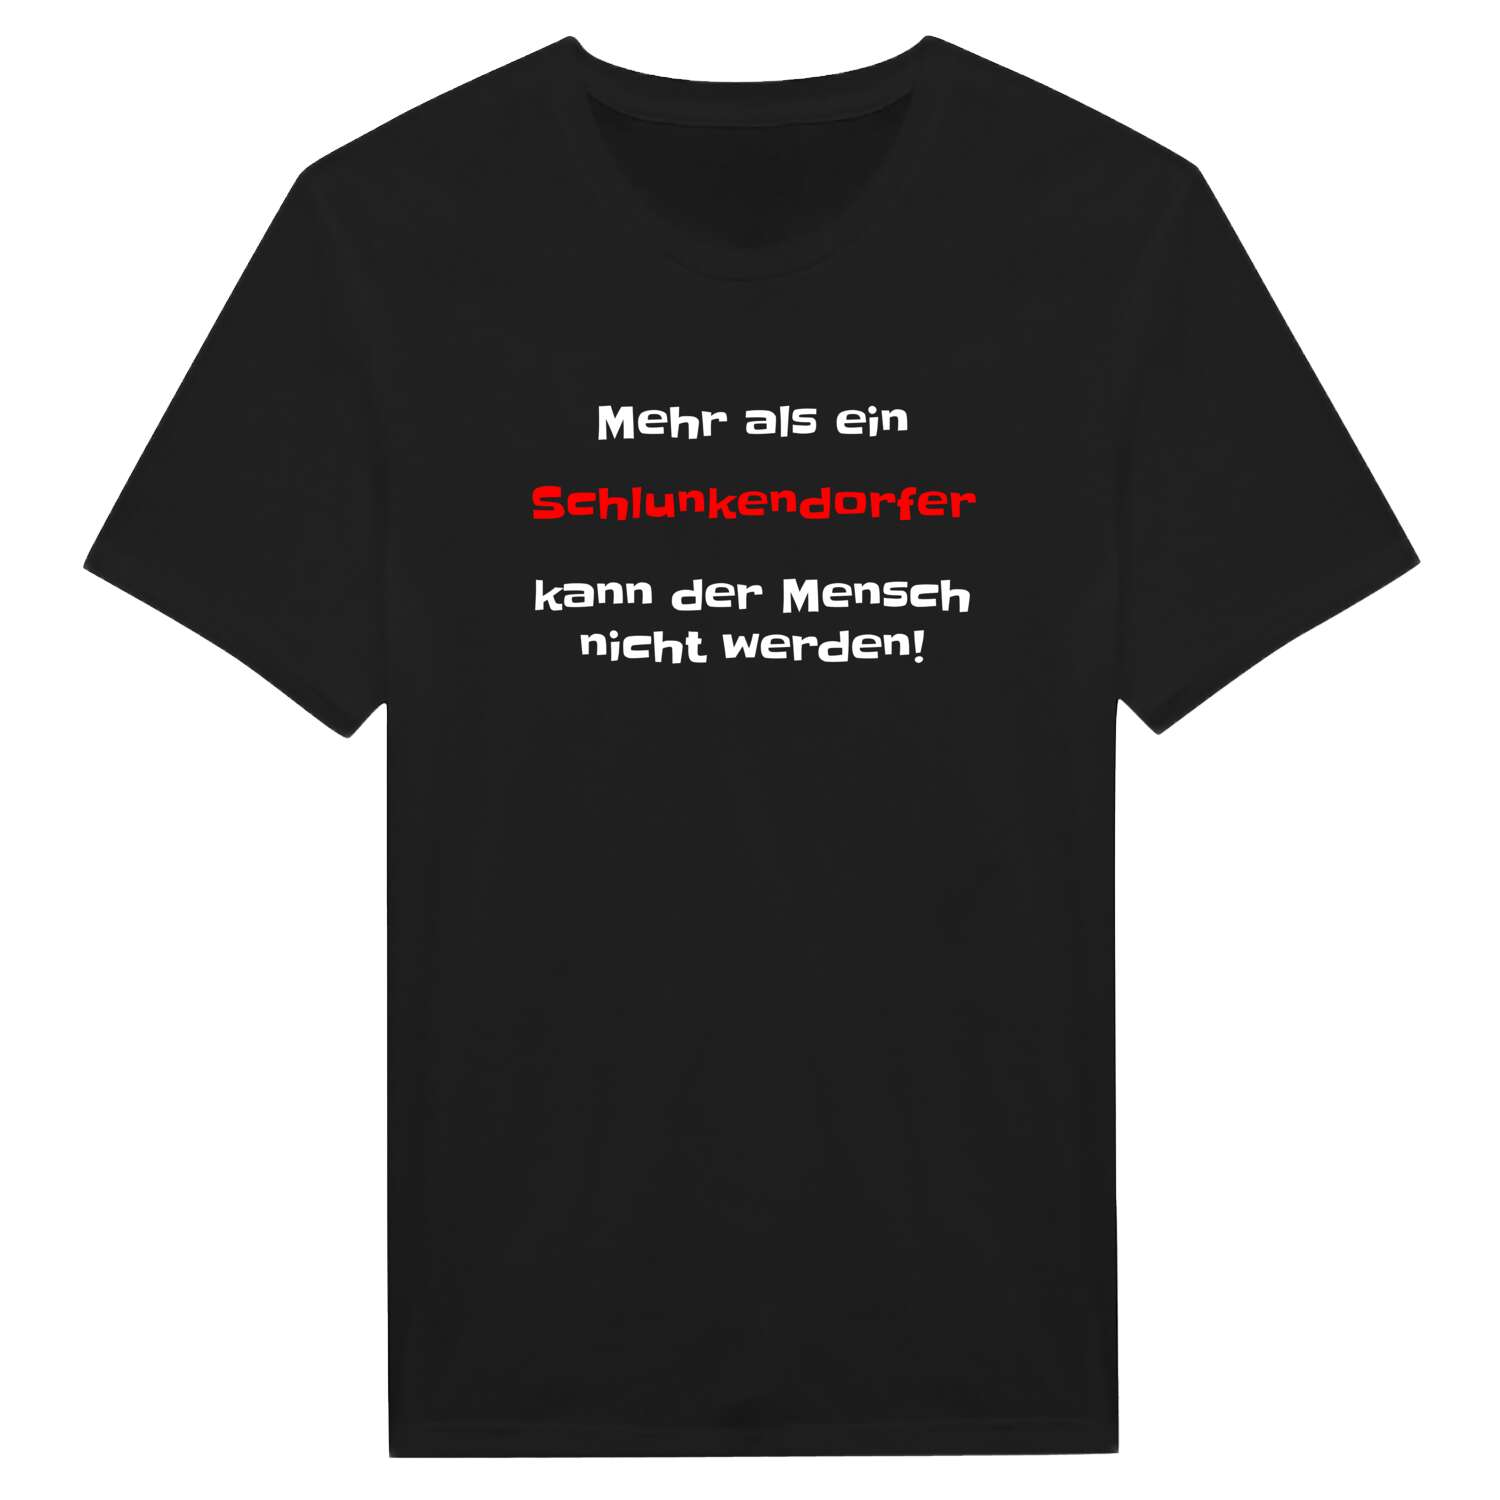 Schlunkendorf T-Shirt »Mehr als ein«